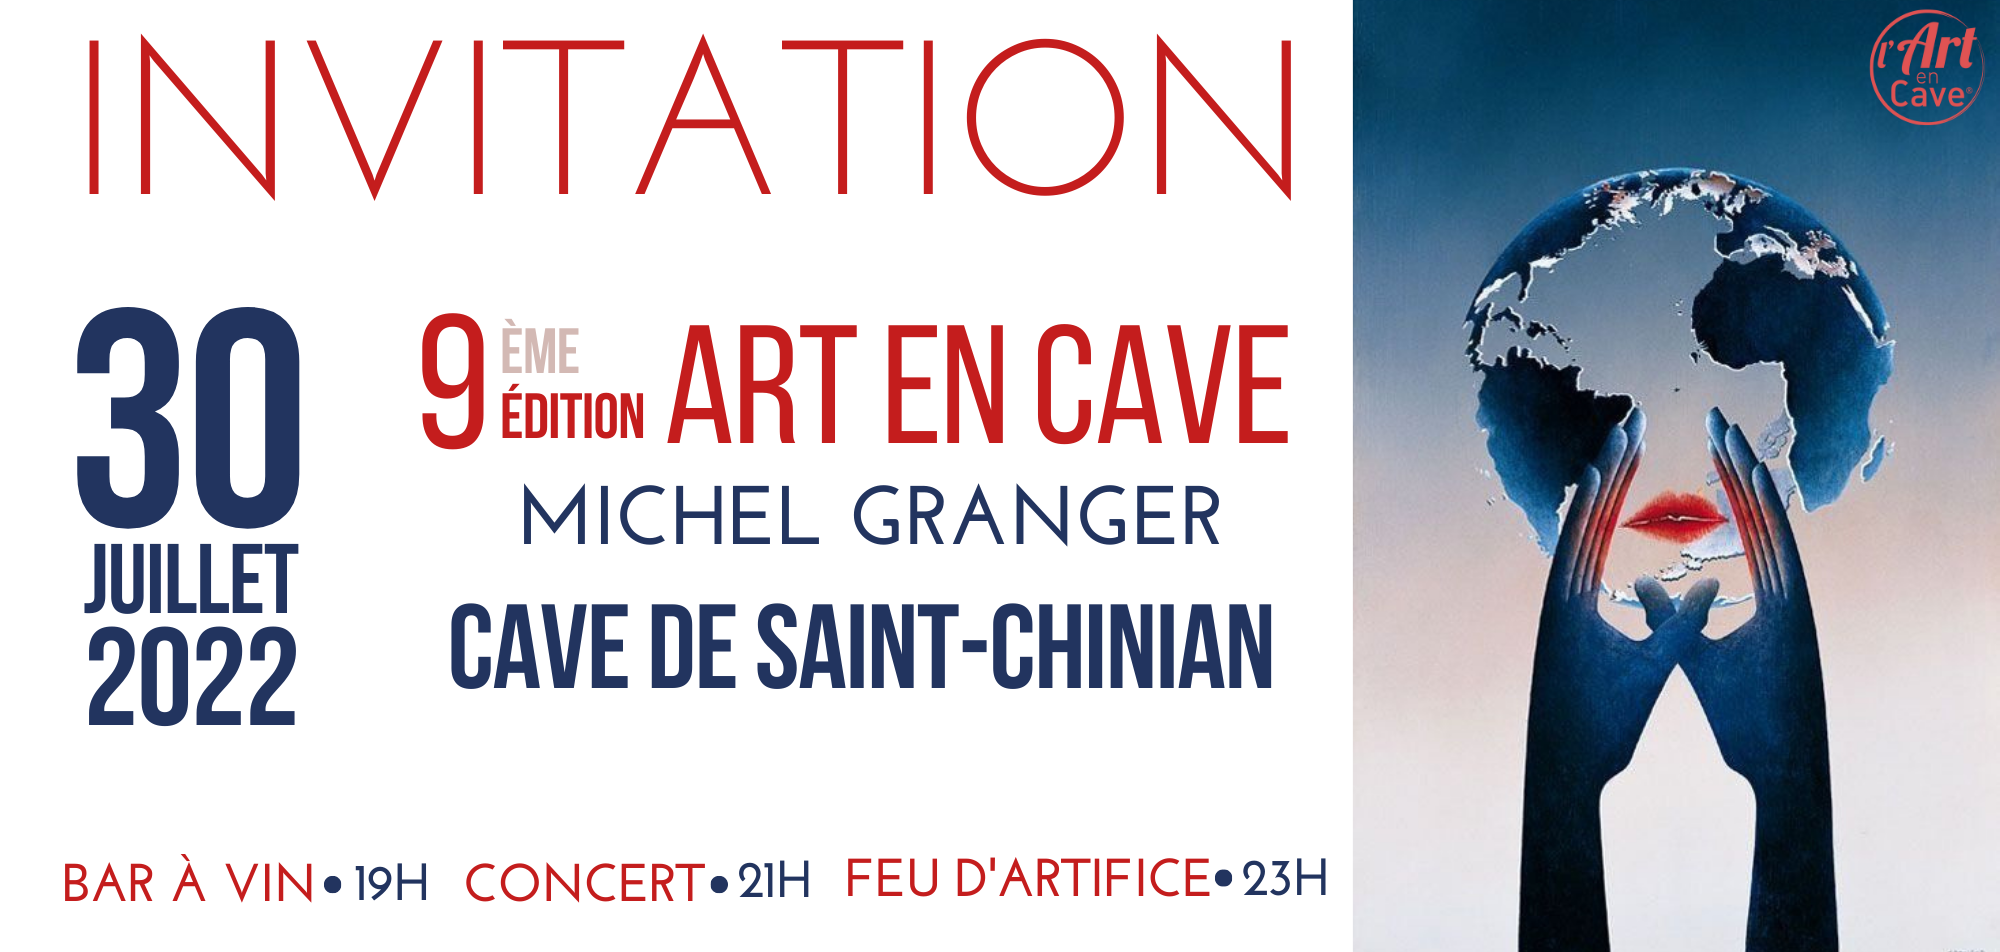 Saint-Chinian - La Cave Coopérative capitale des arts en Languedoc célèbre l'Art en Cave édition 2022 !  Rendez-vous